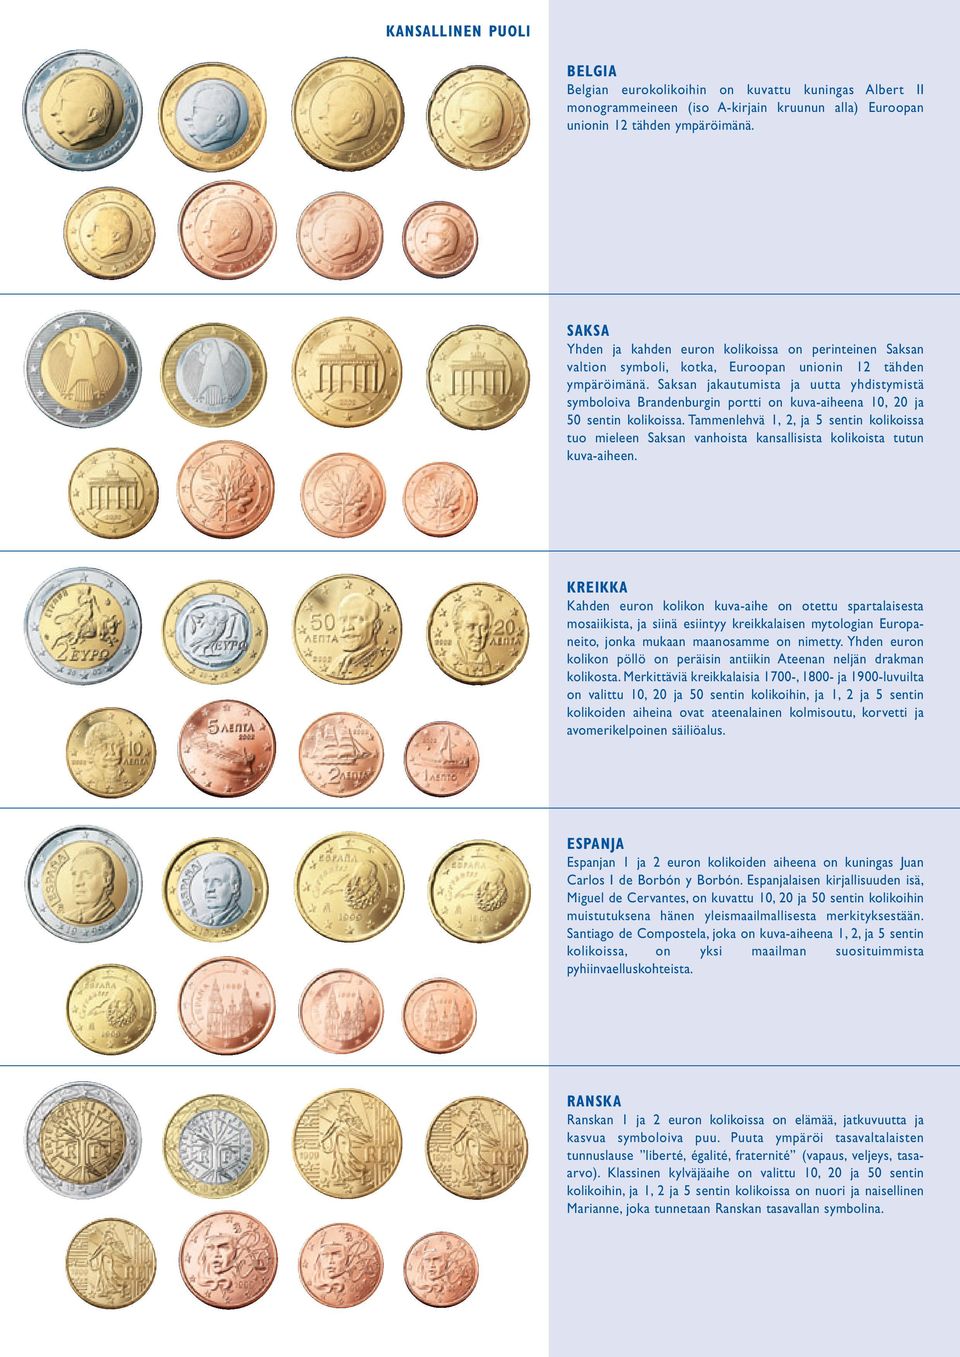 Saksan jakautumista ja uutta yhdistymistä symboloiva Brandenburgin portti on kuva-aiheena 10, 20 ja 50 sentin kolikoissa.